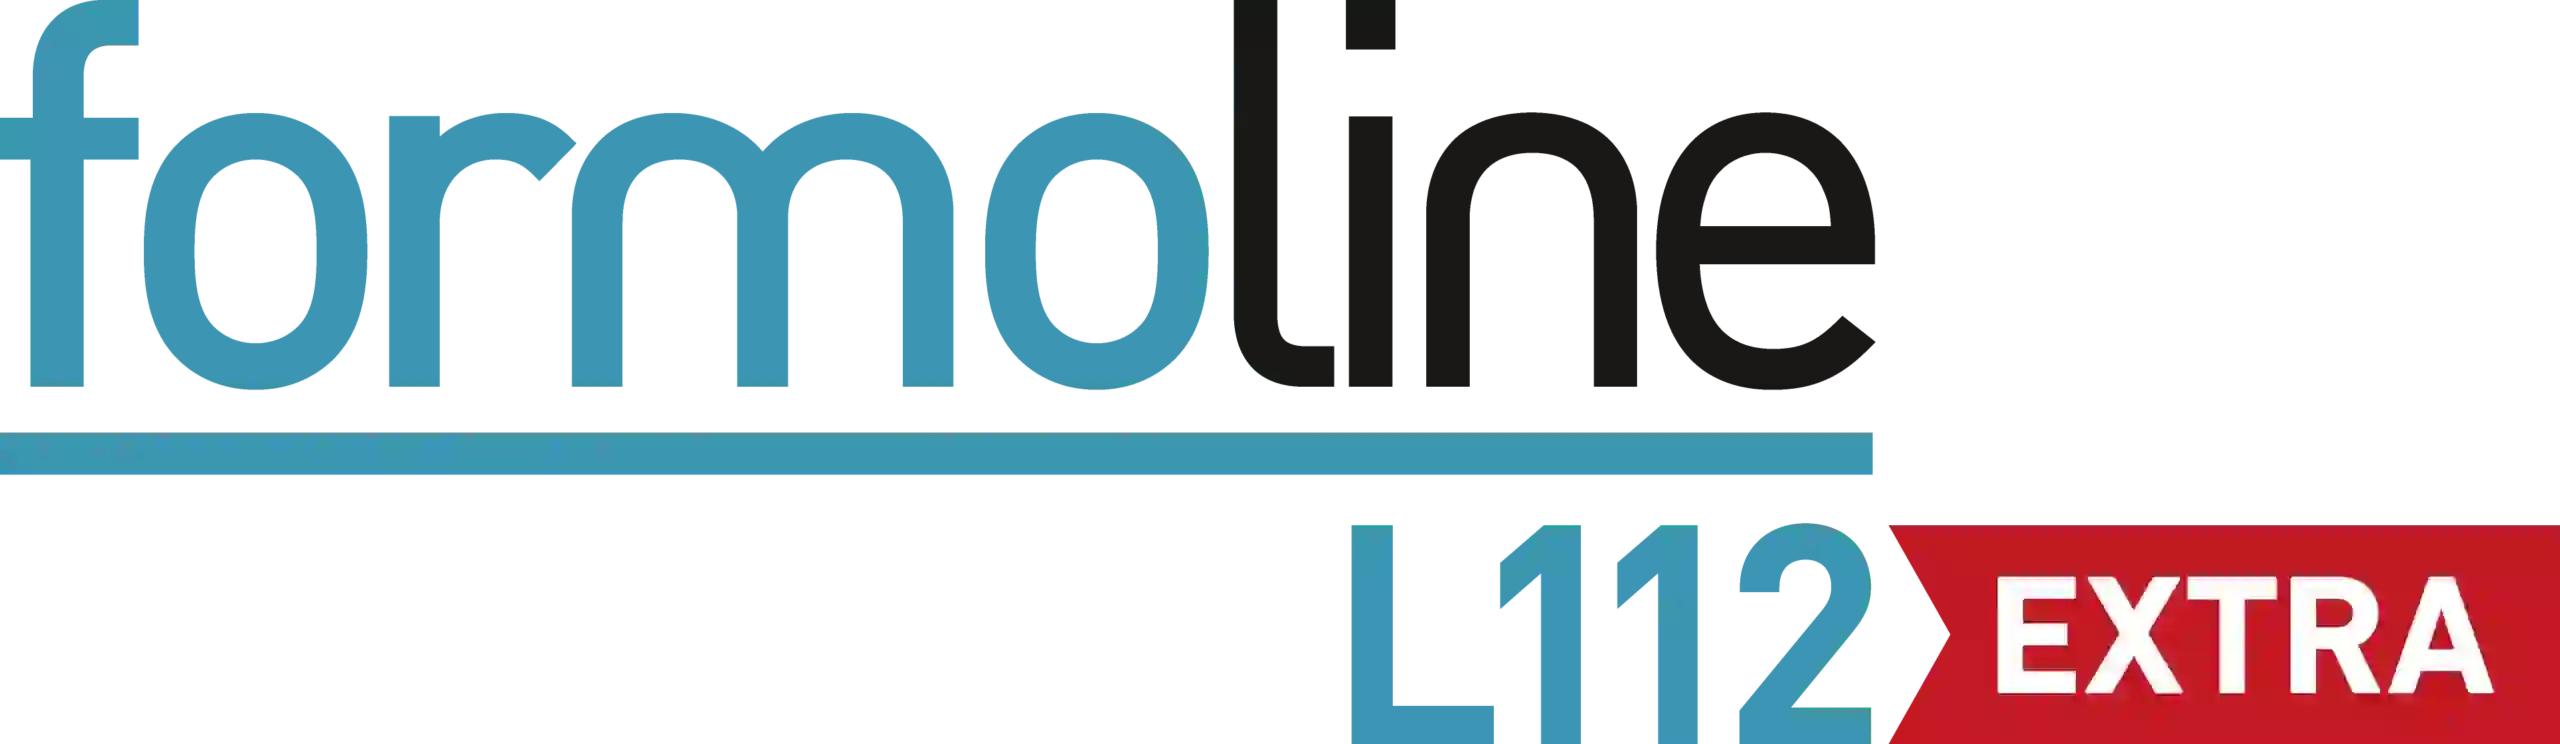 formoline-L112-logo